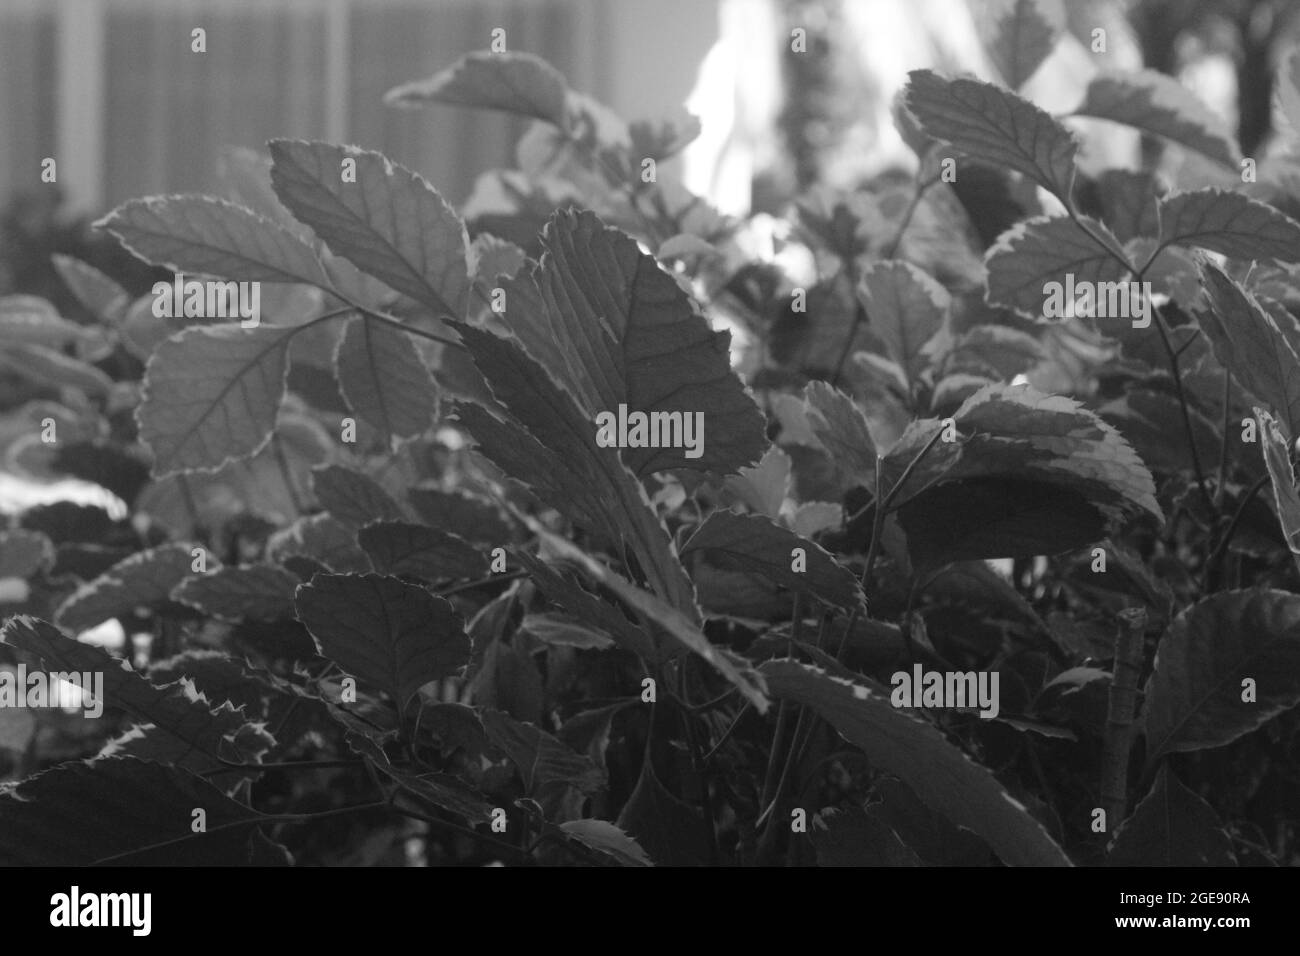 Gros plan en niveaux de gris des feuilles fraîches sur les plantes dans des pots Banque D'Images